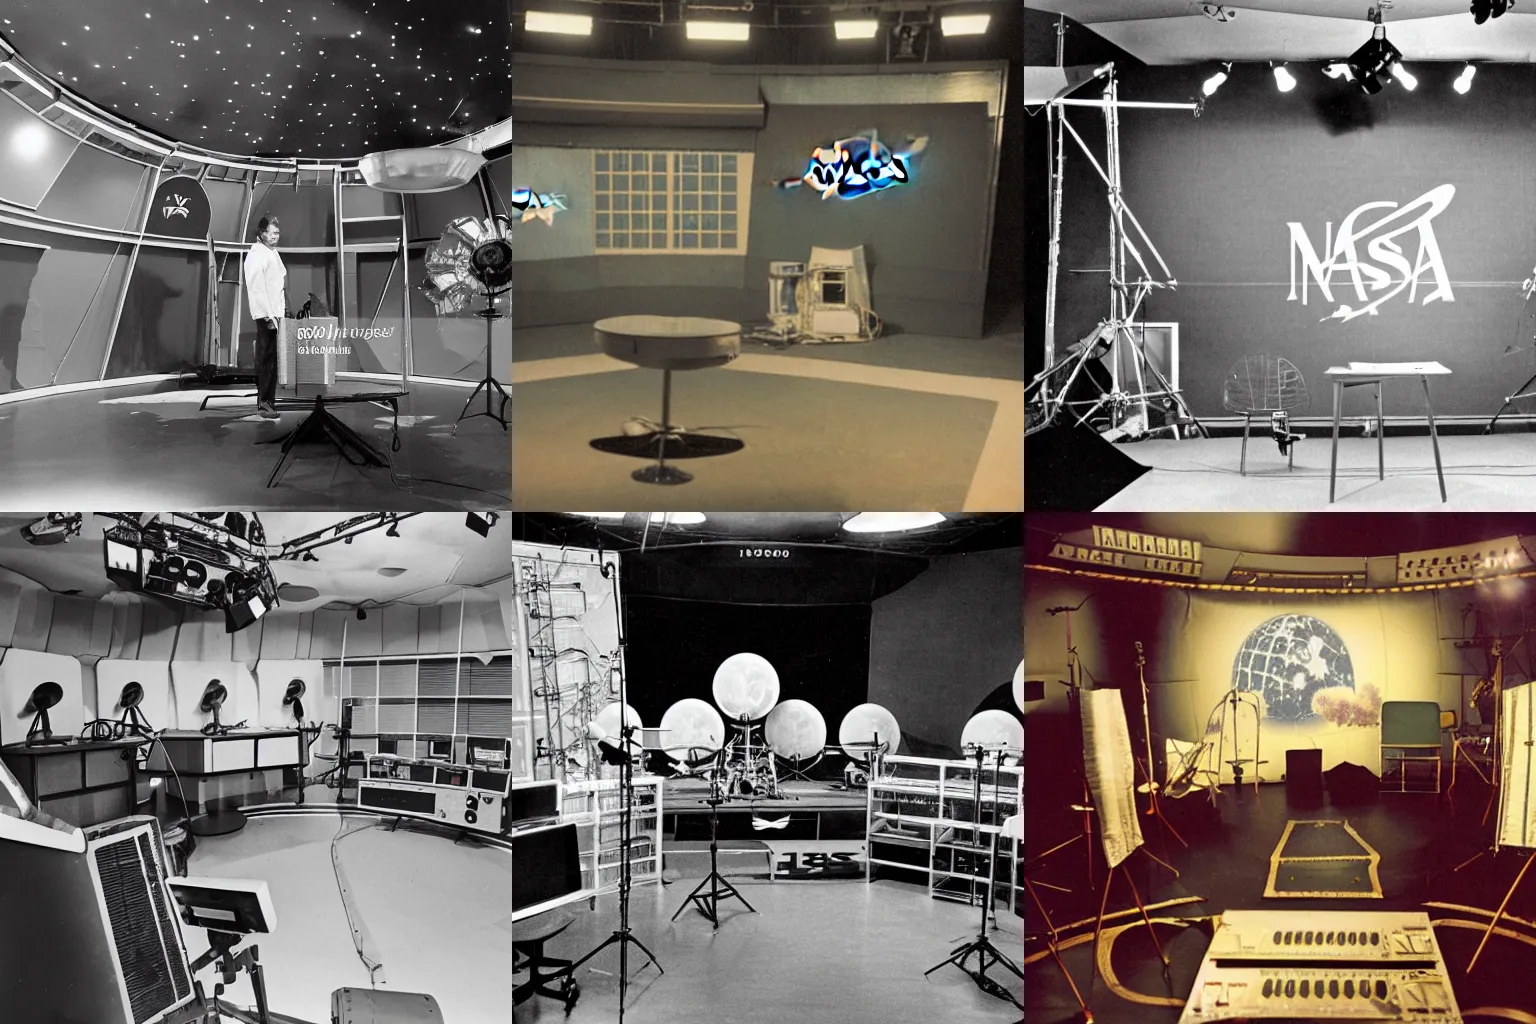 Prompt: behind the scenes 1960s nasa moon landing studio set